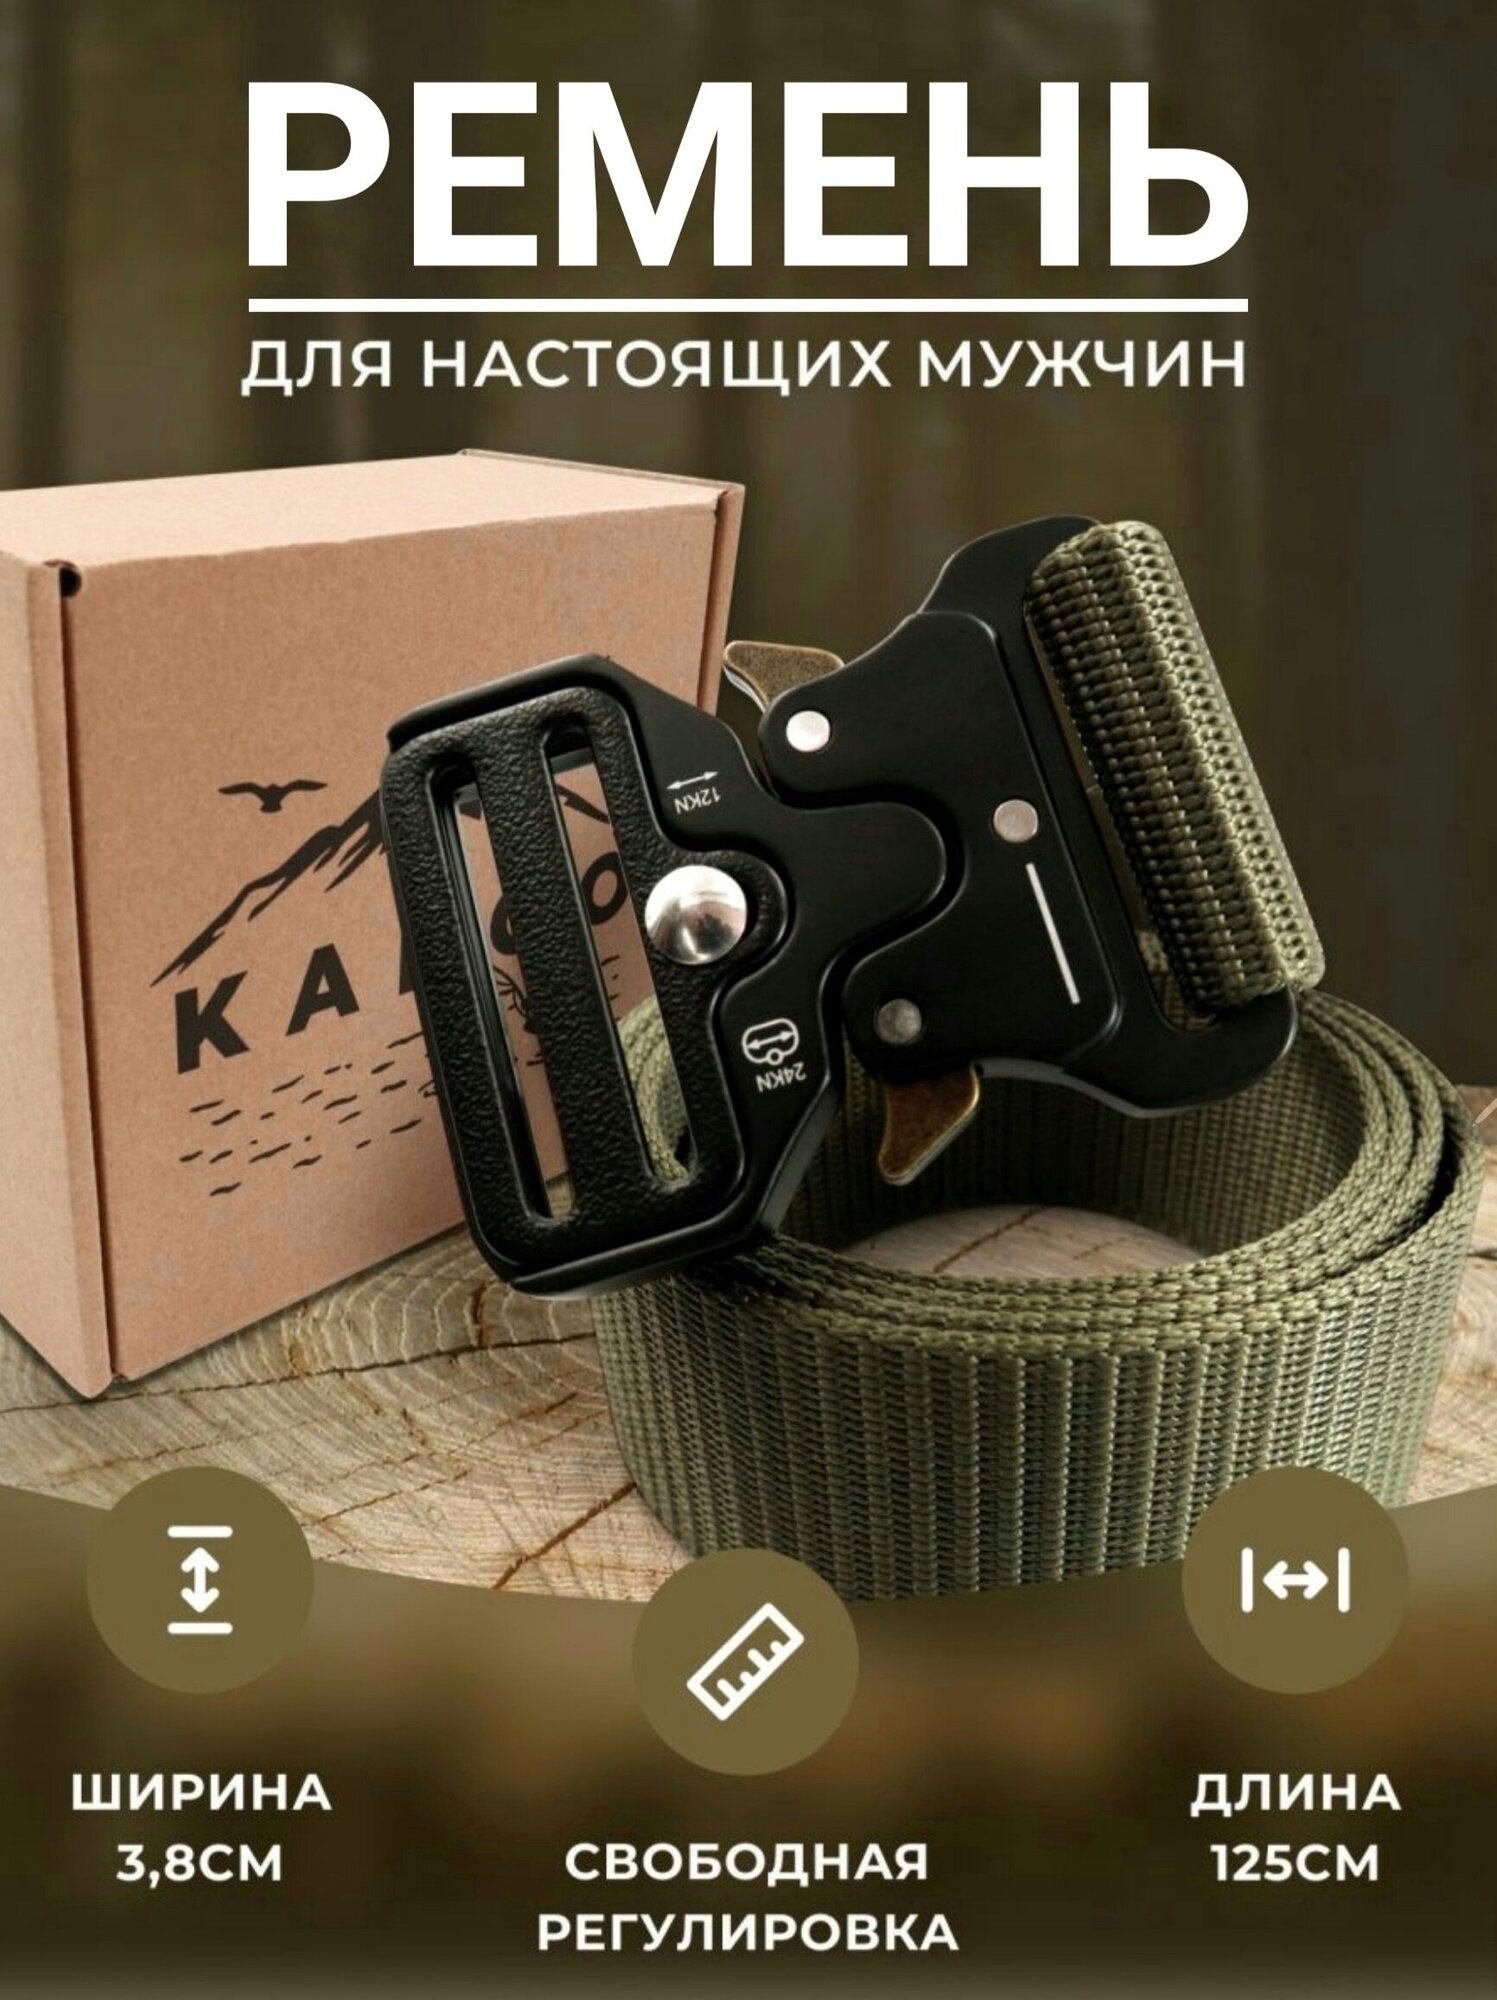 Ремень текстиль, тактический, для мужчин, размер 2, длина 125 см., зеленый,хаки — купить в интернет-магазине по низкой цене на Яндекс Маркете